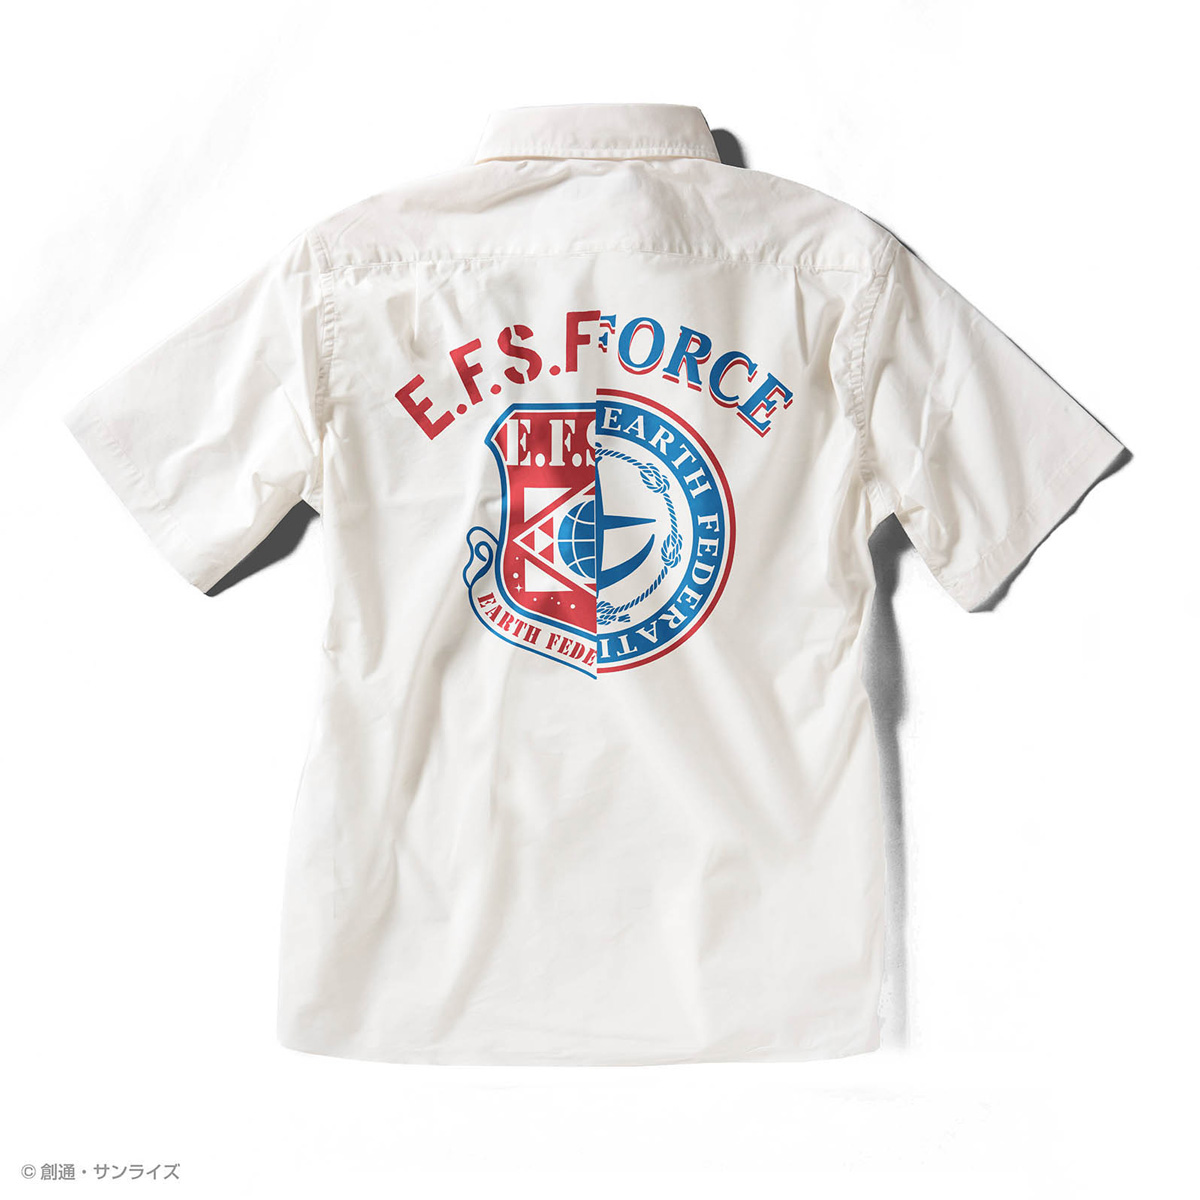 『機動戦士ガンダム』シャツコレクション発売！サラリとした快適な着心地、クールマックスシャツ、全6種！